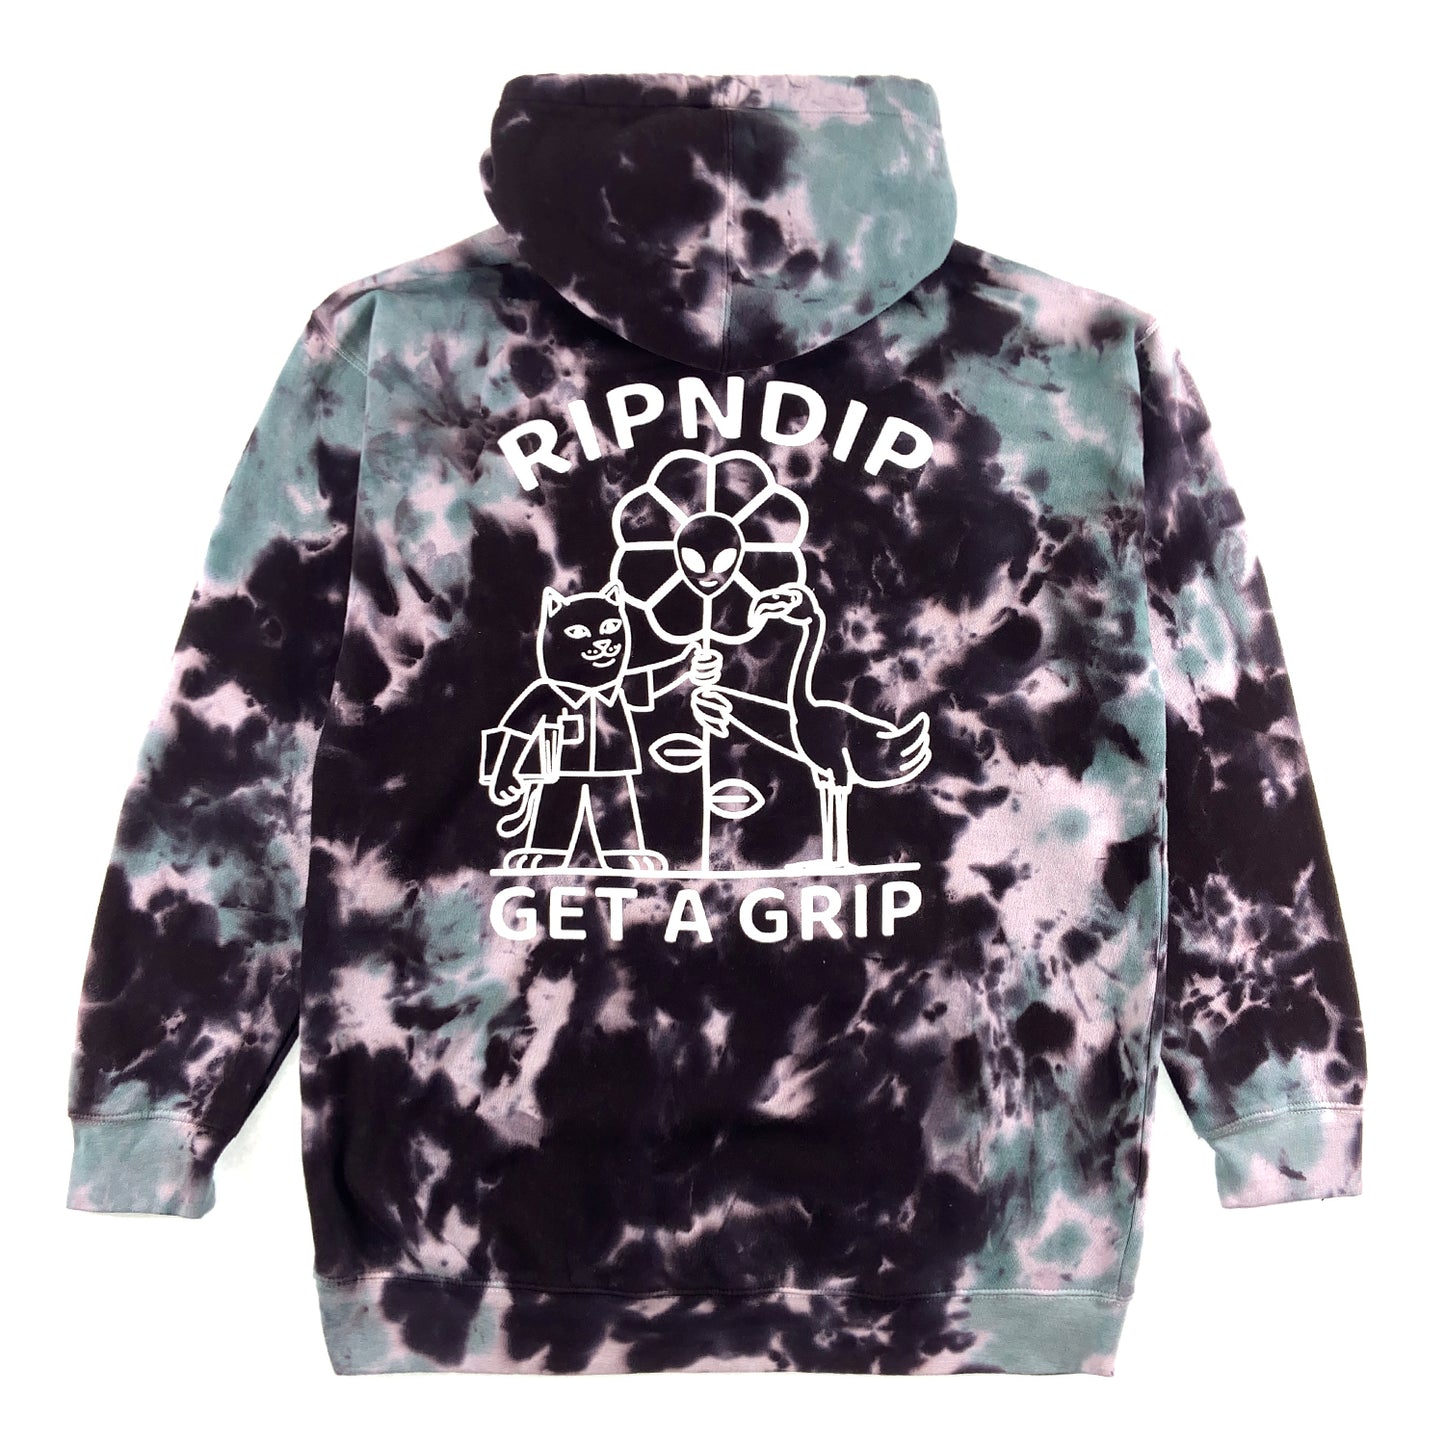 RIPNDIP - Get A Grip Hoodie - Black / Sage Tie Dye - Prime Delux Store